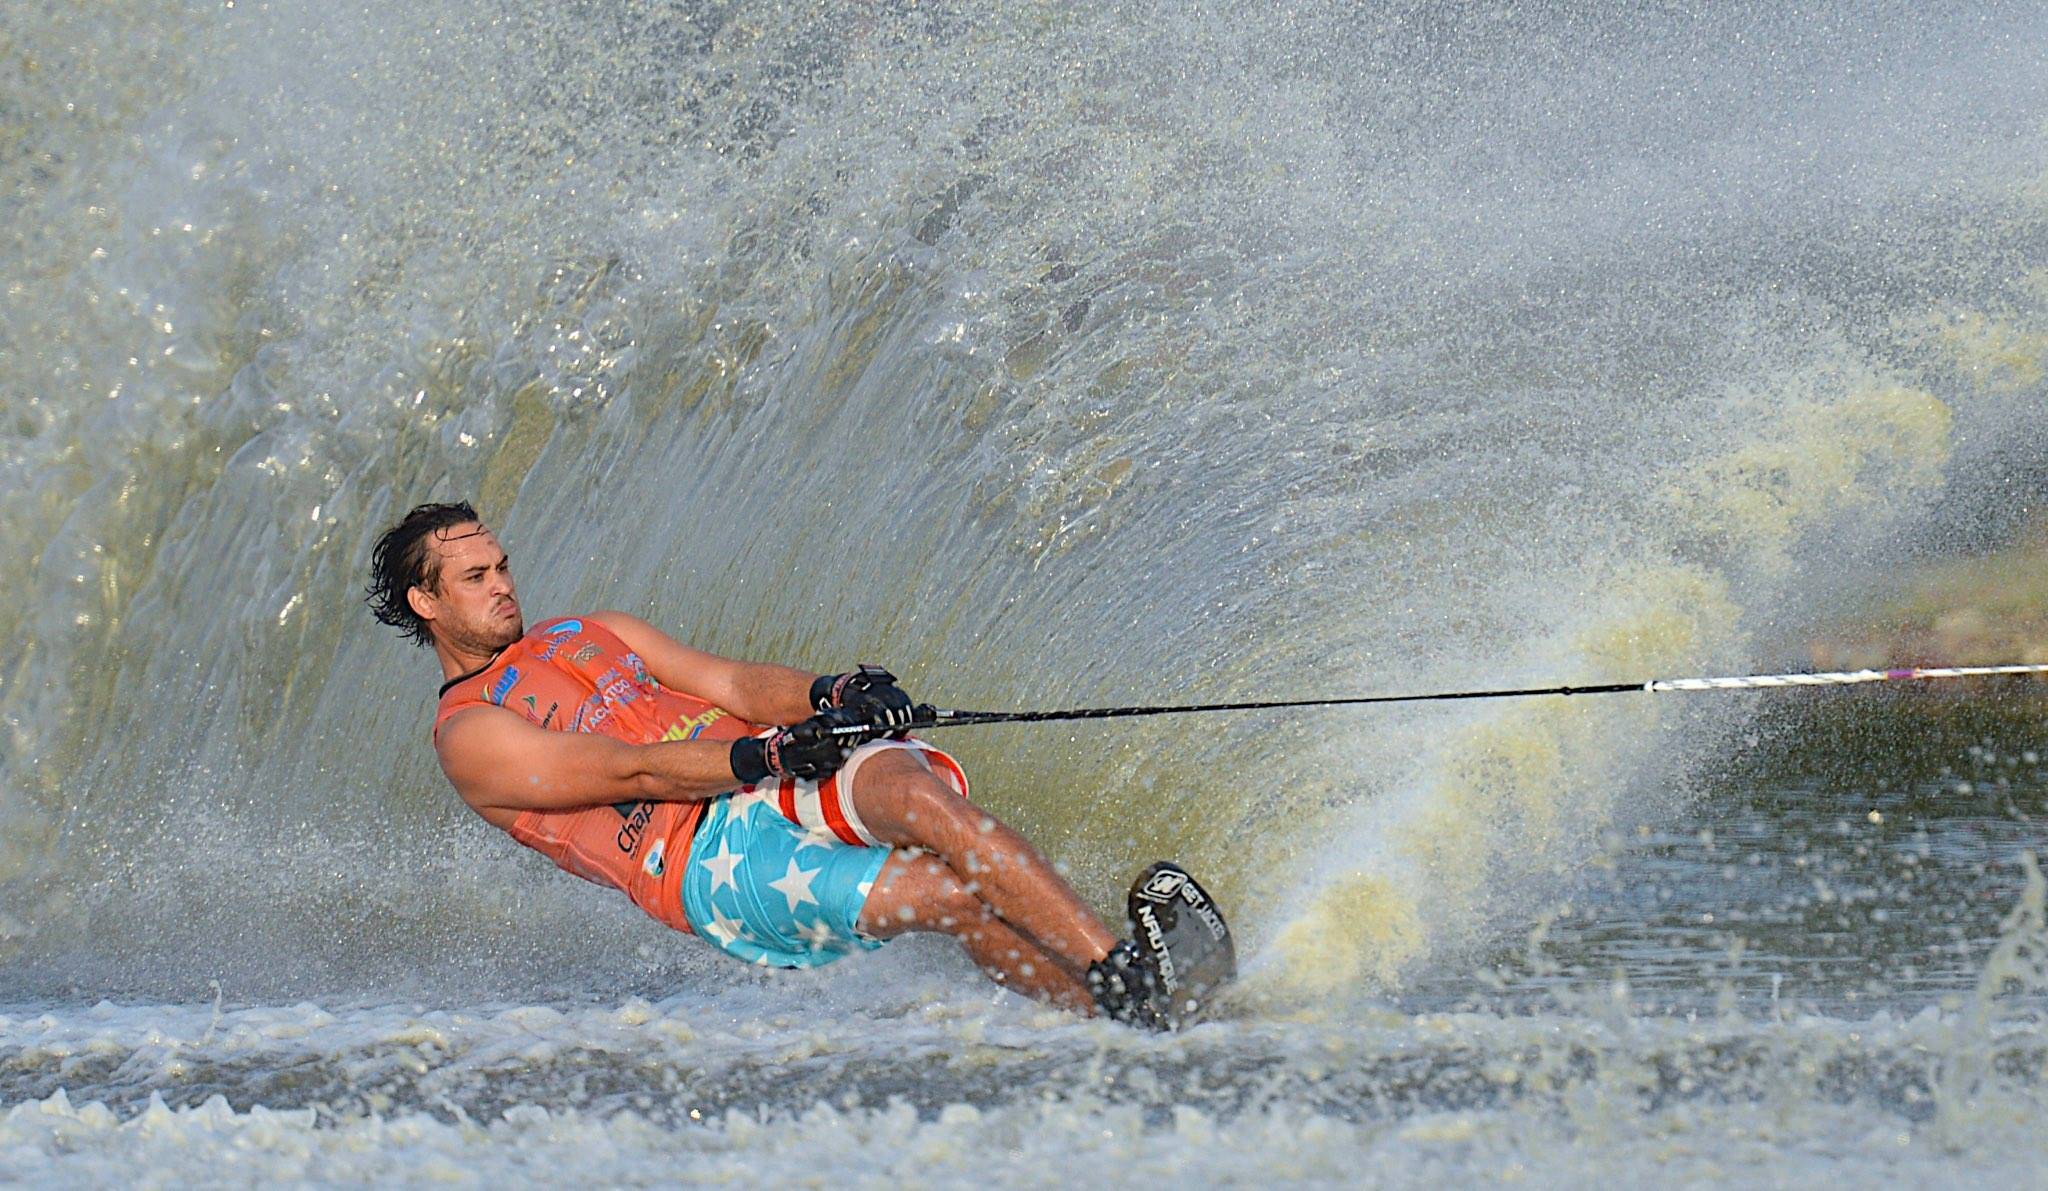 Как кататься на водных лыжах